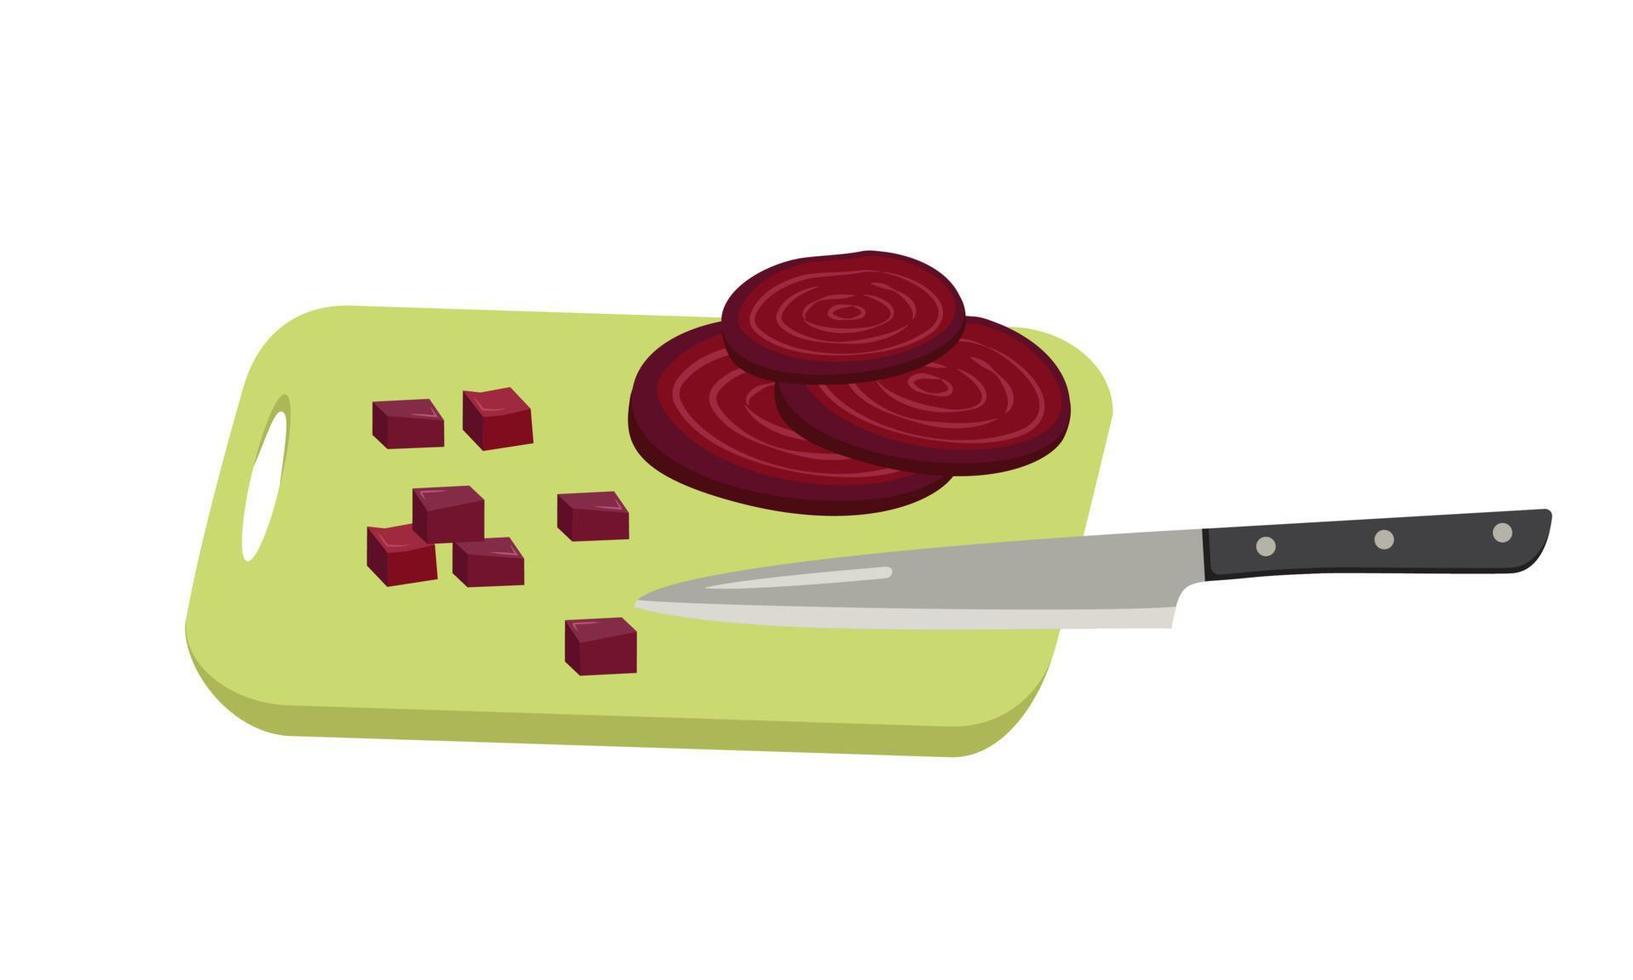 rödbetsskivor och kuber skurna med kniv ombord. hälsosamma grönsaker och utsökt mat för sallad, matlagning. platt vektor illustration